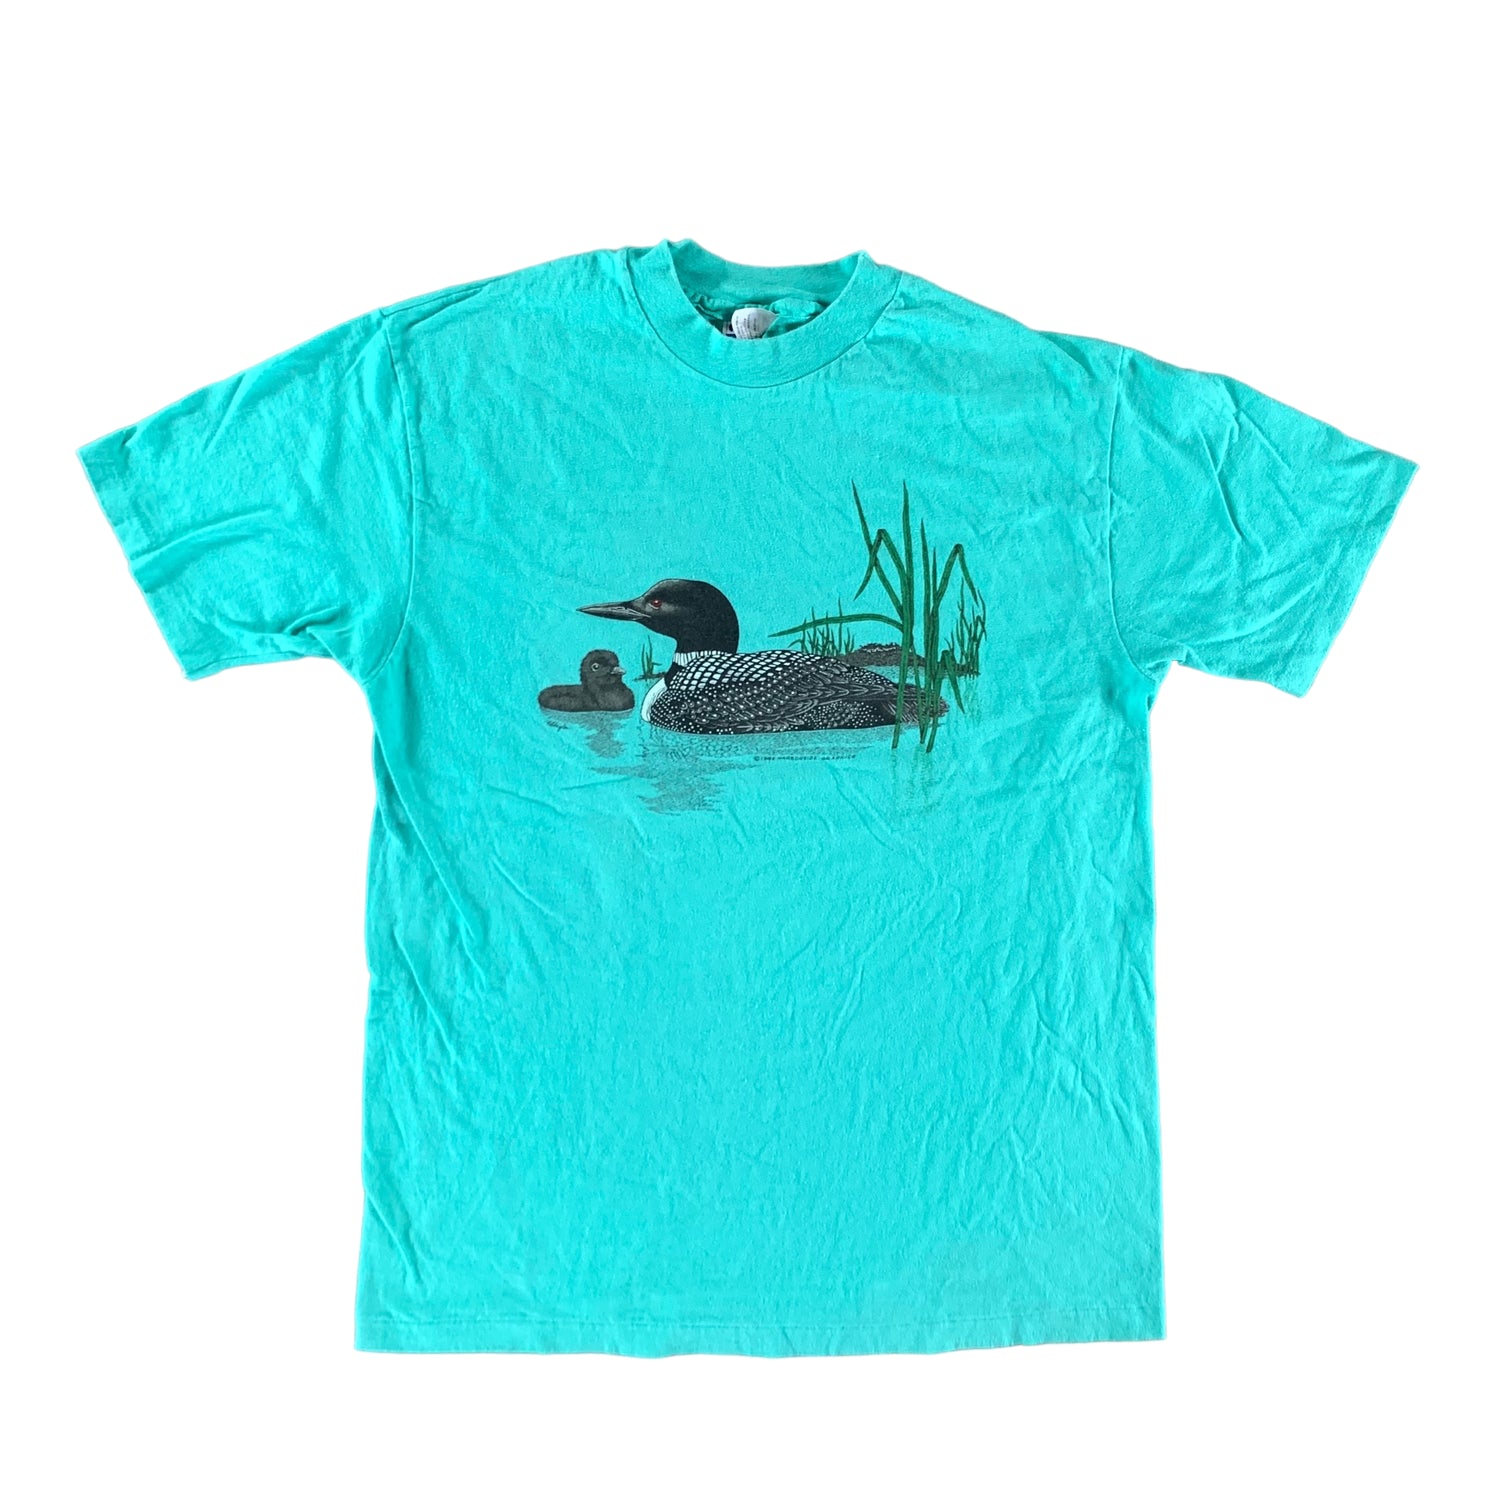 Vintage 1986 Duck T-shirt size Large